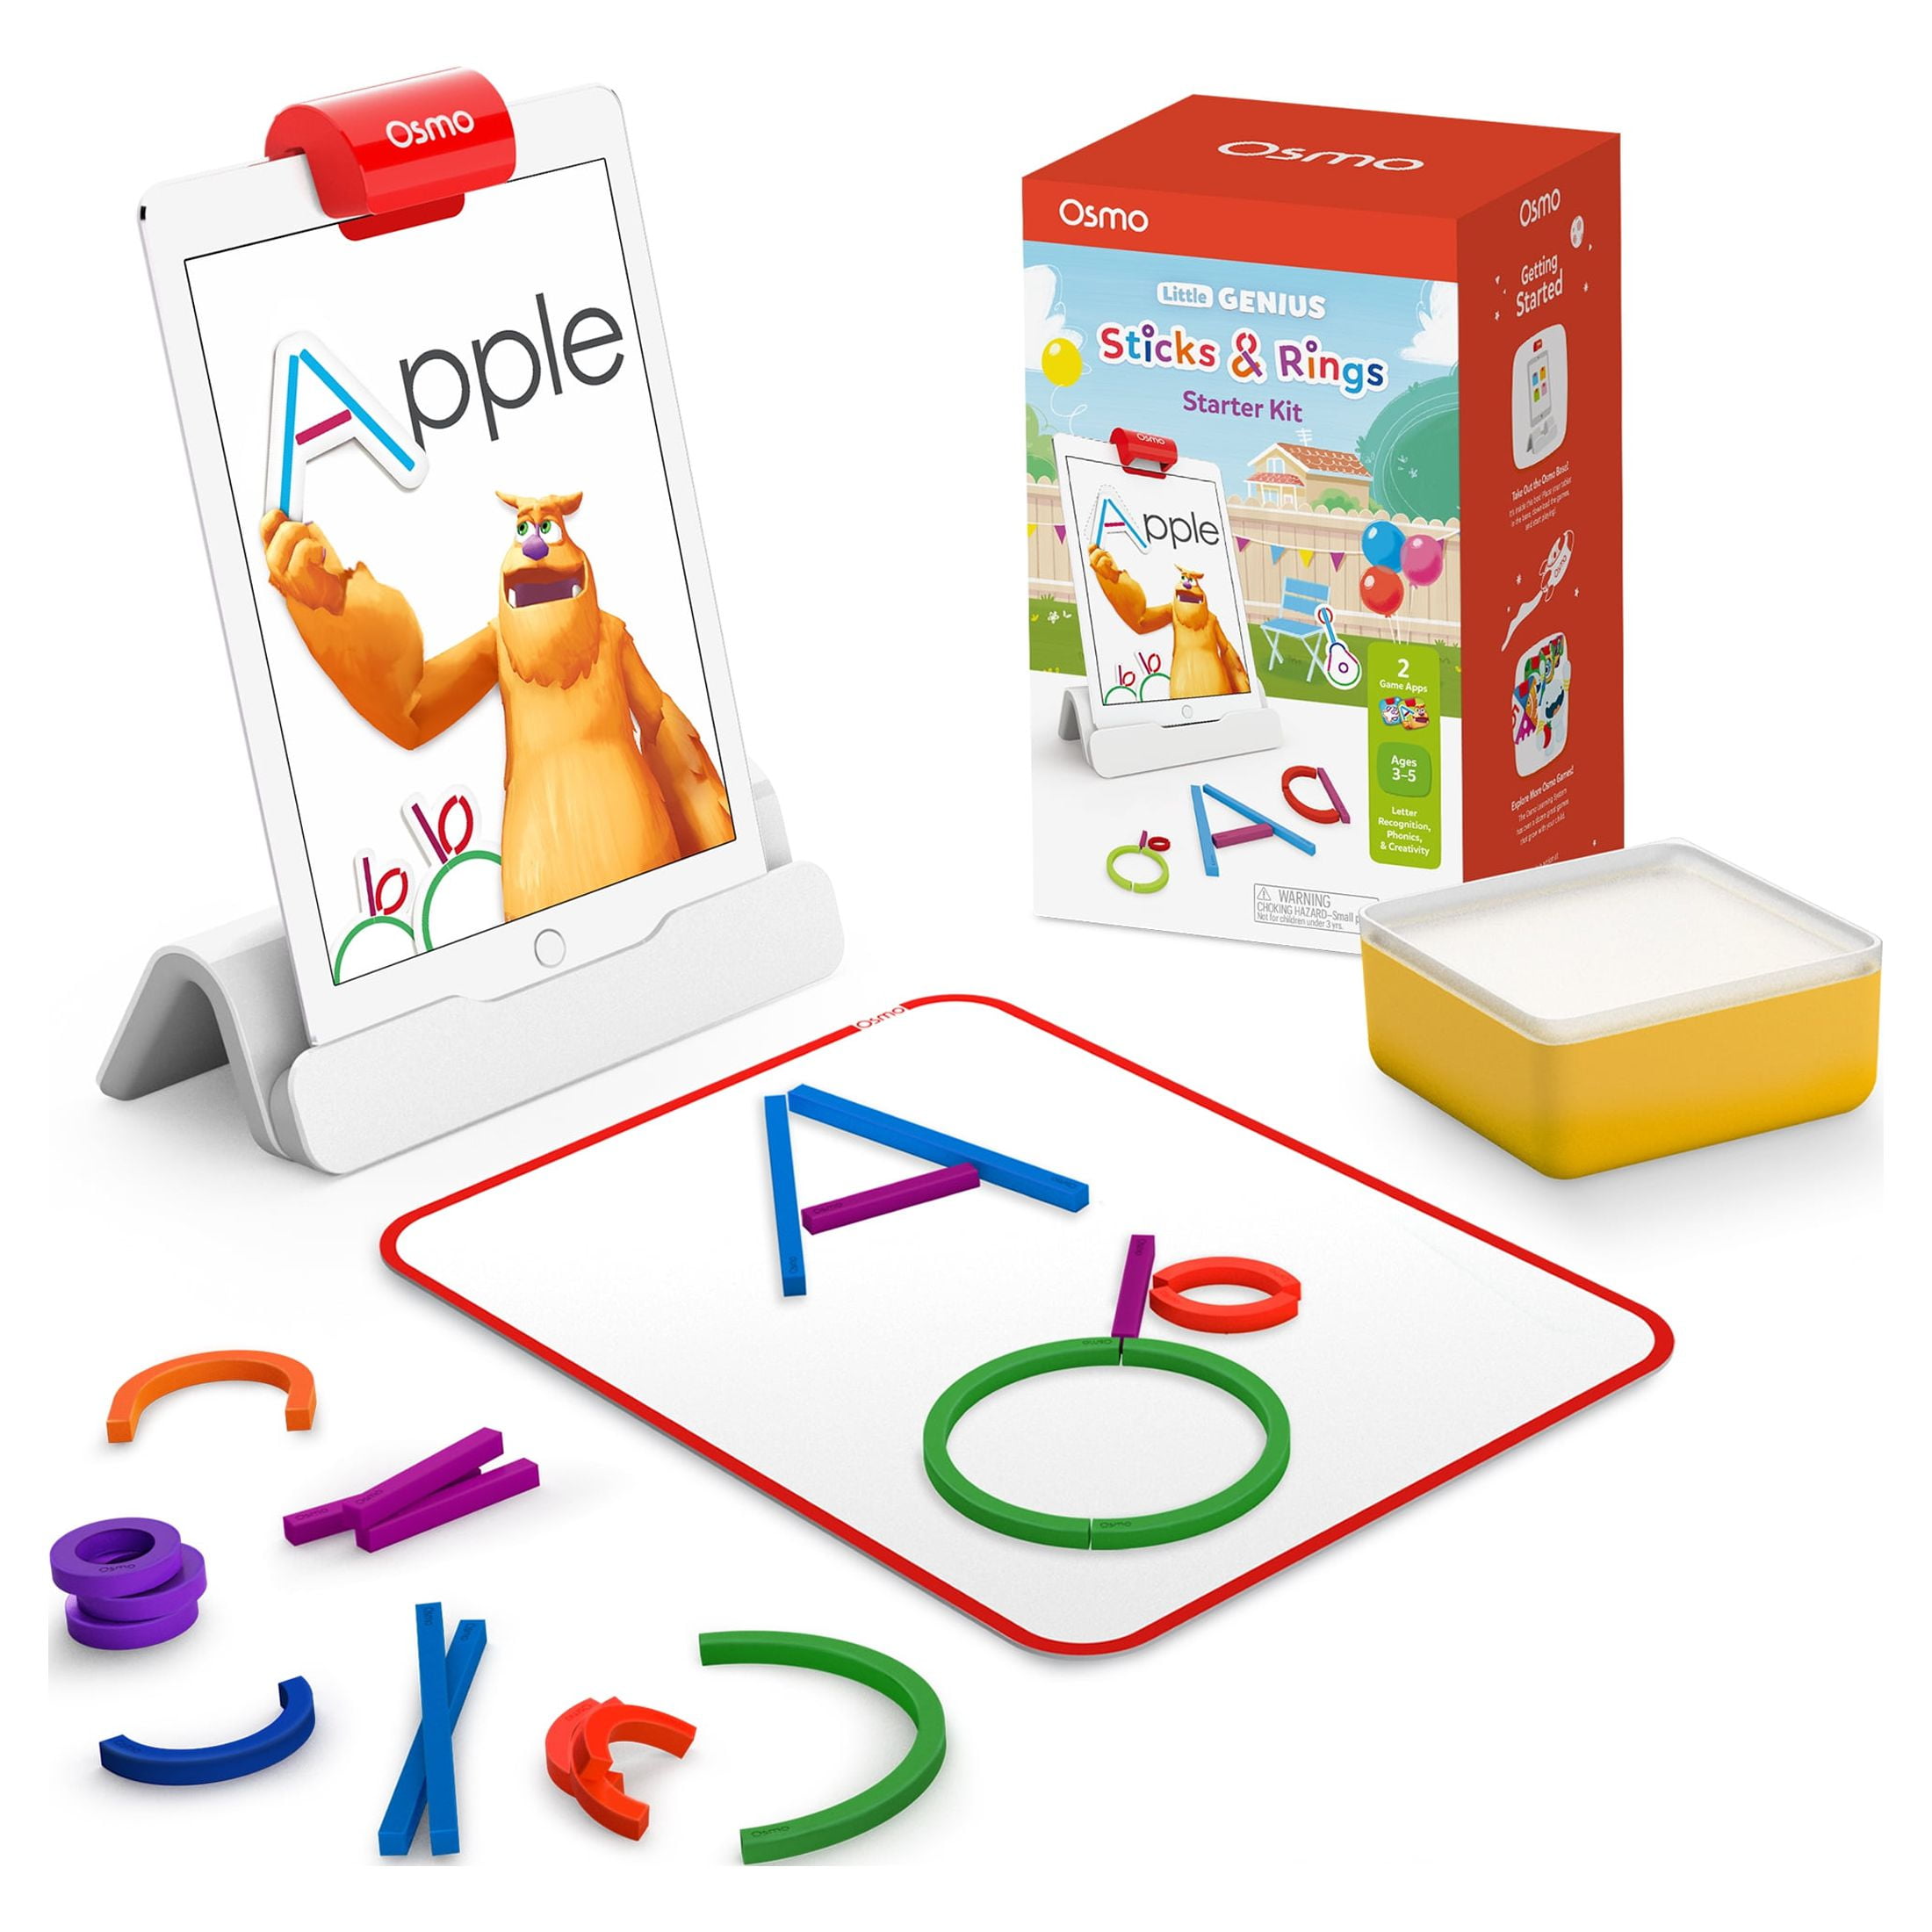 Osmo - Sticks & Rings Starter Kit for iPad, Educational Toys for